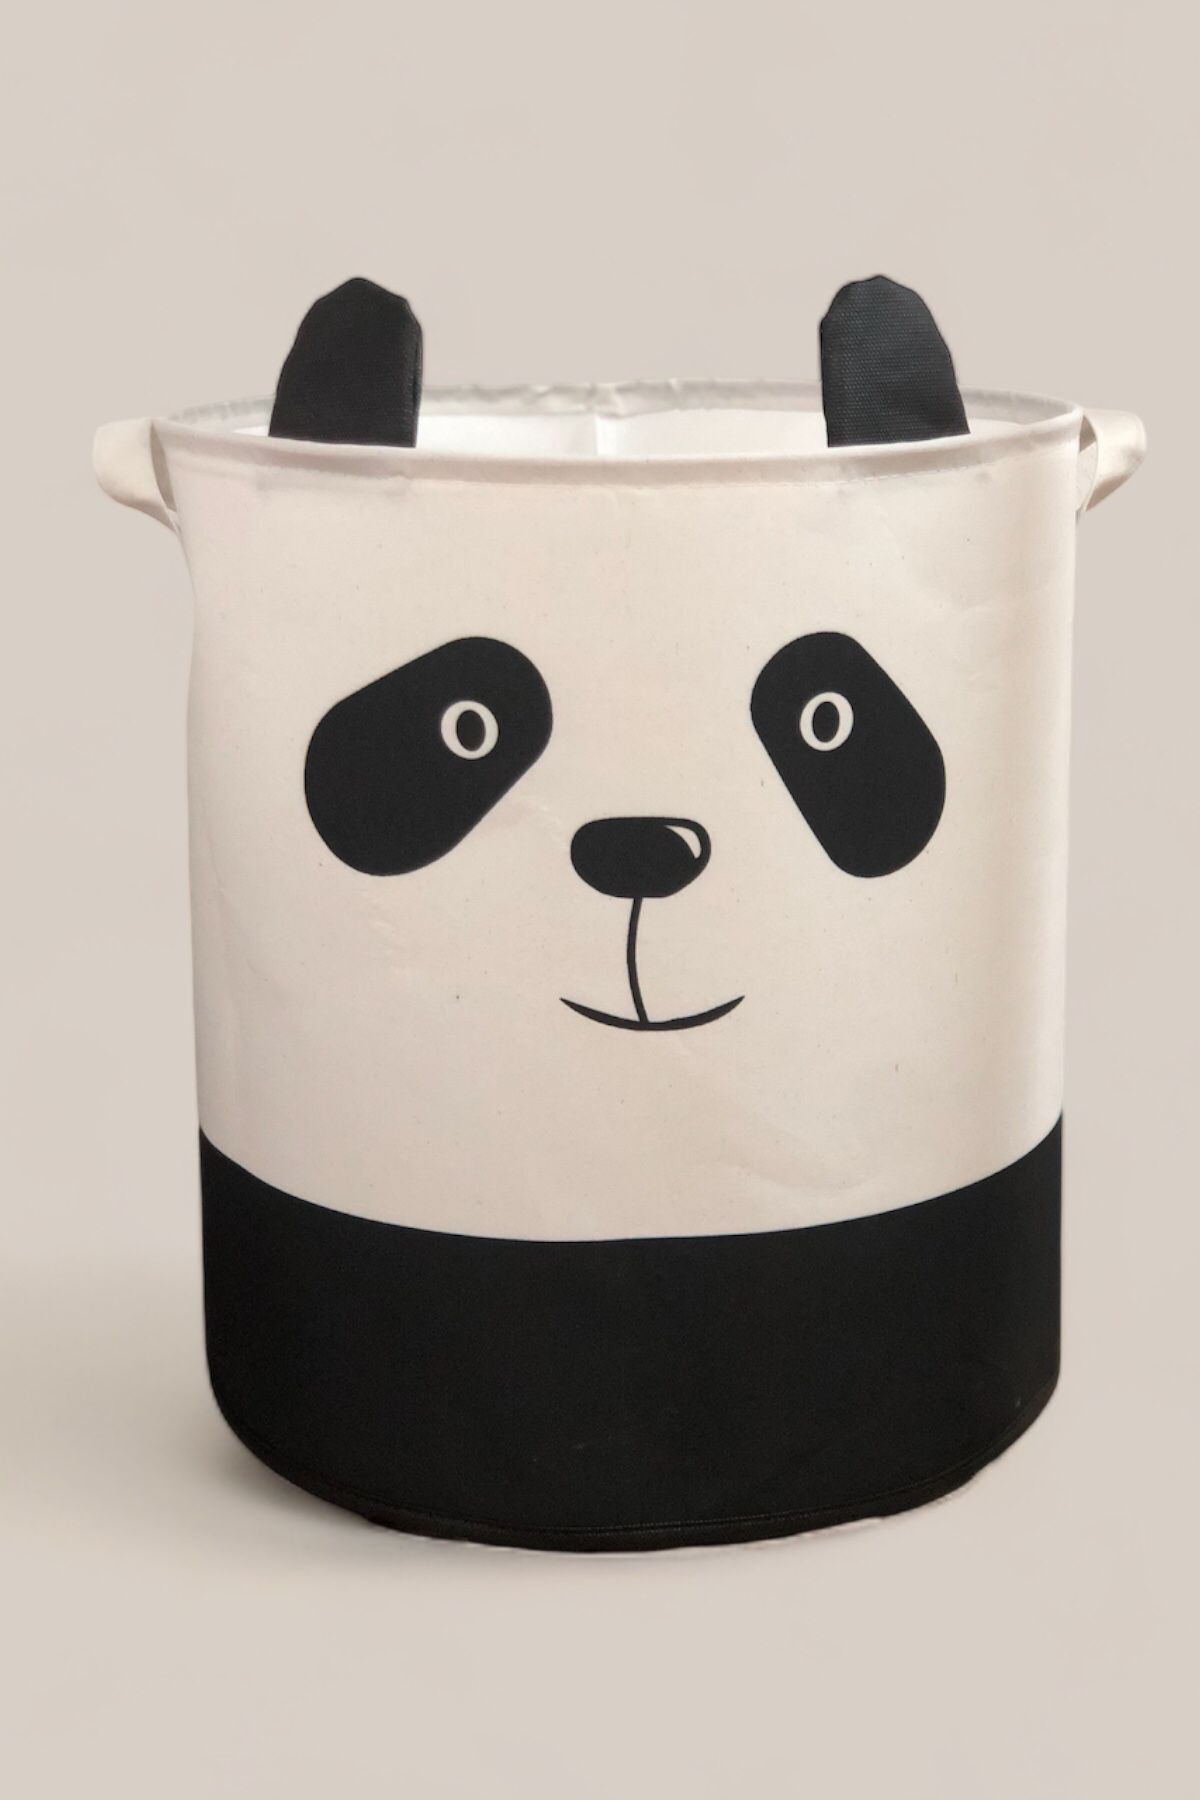 PRENDİ HOME Panda Tasarımlı Bebek Çocuk Odası  Düzenleyici Saklama Kutusu Oyuncak Kirli Sepeti 37x40